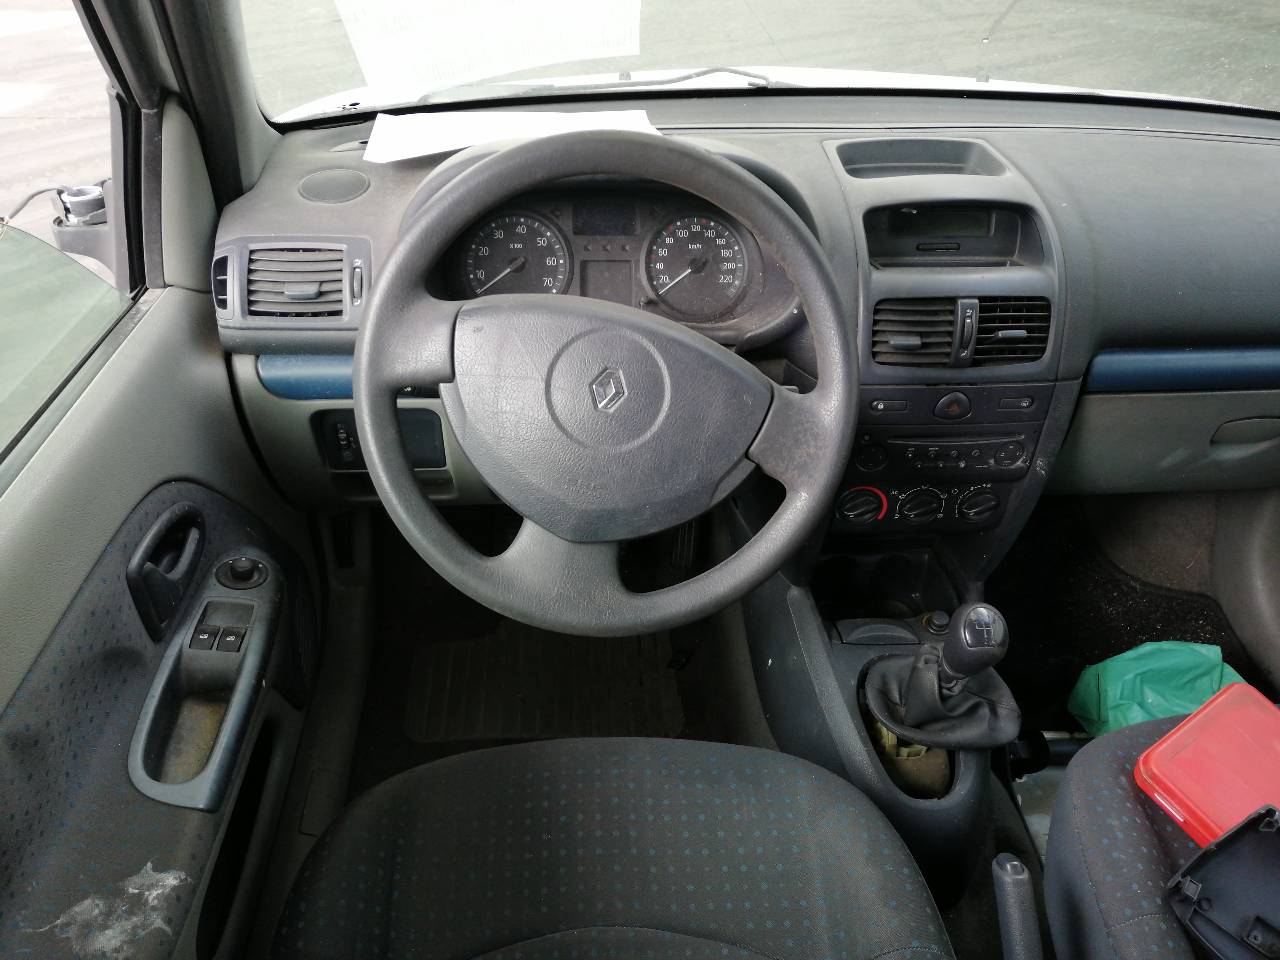 RENAULT Clio 3 generation (2005-2012) Rear Right Door Lock 7701469941, 2PINES, 5PUERTAS 23894465